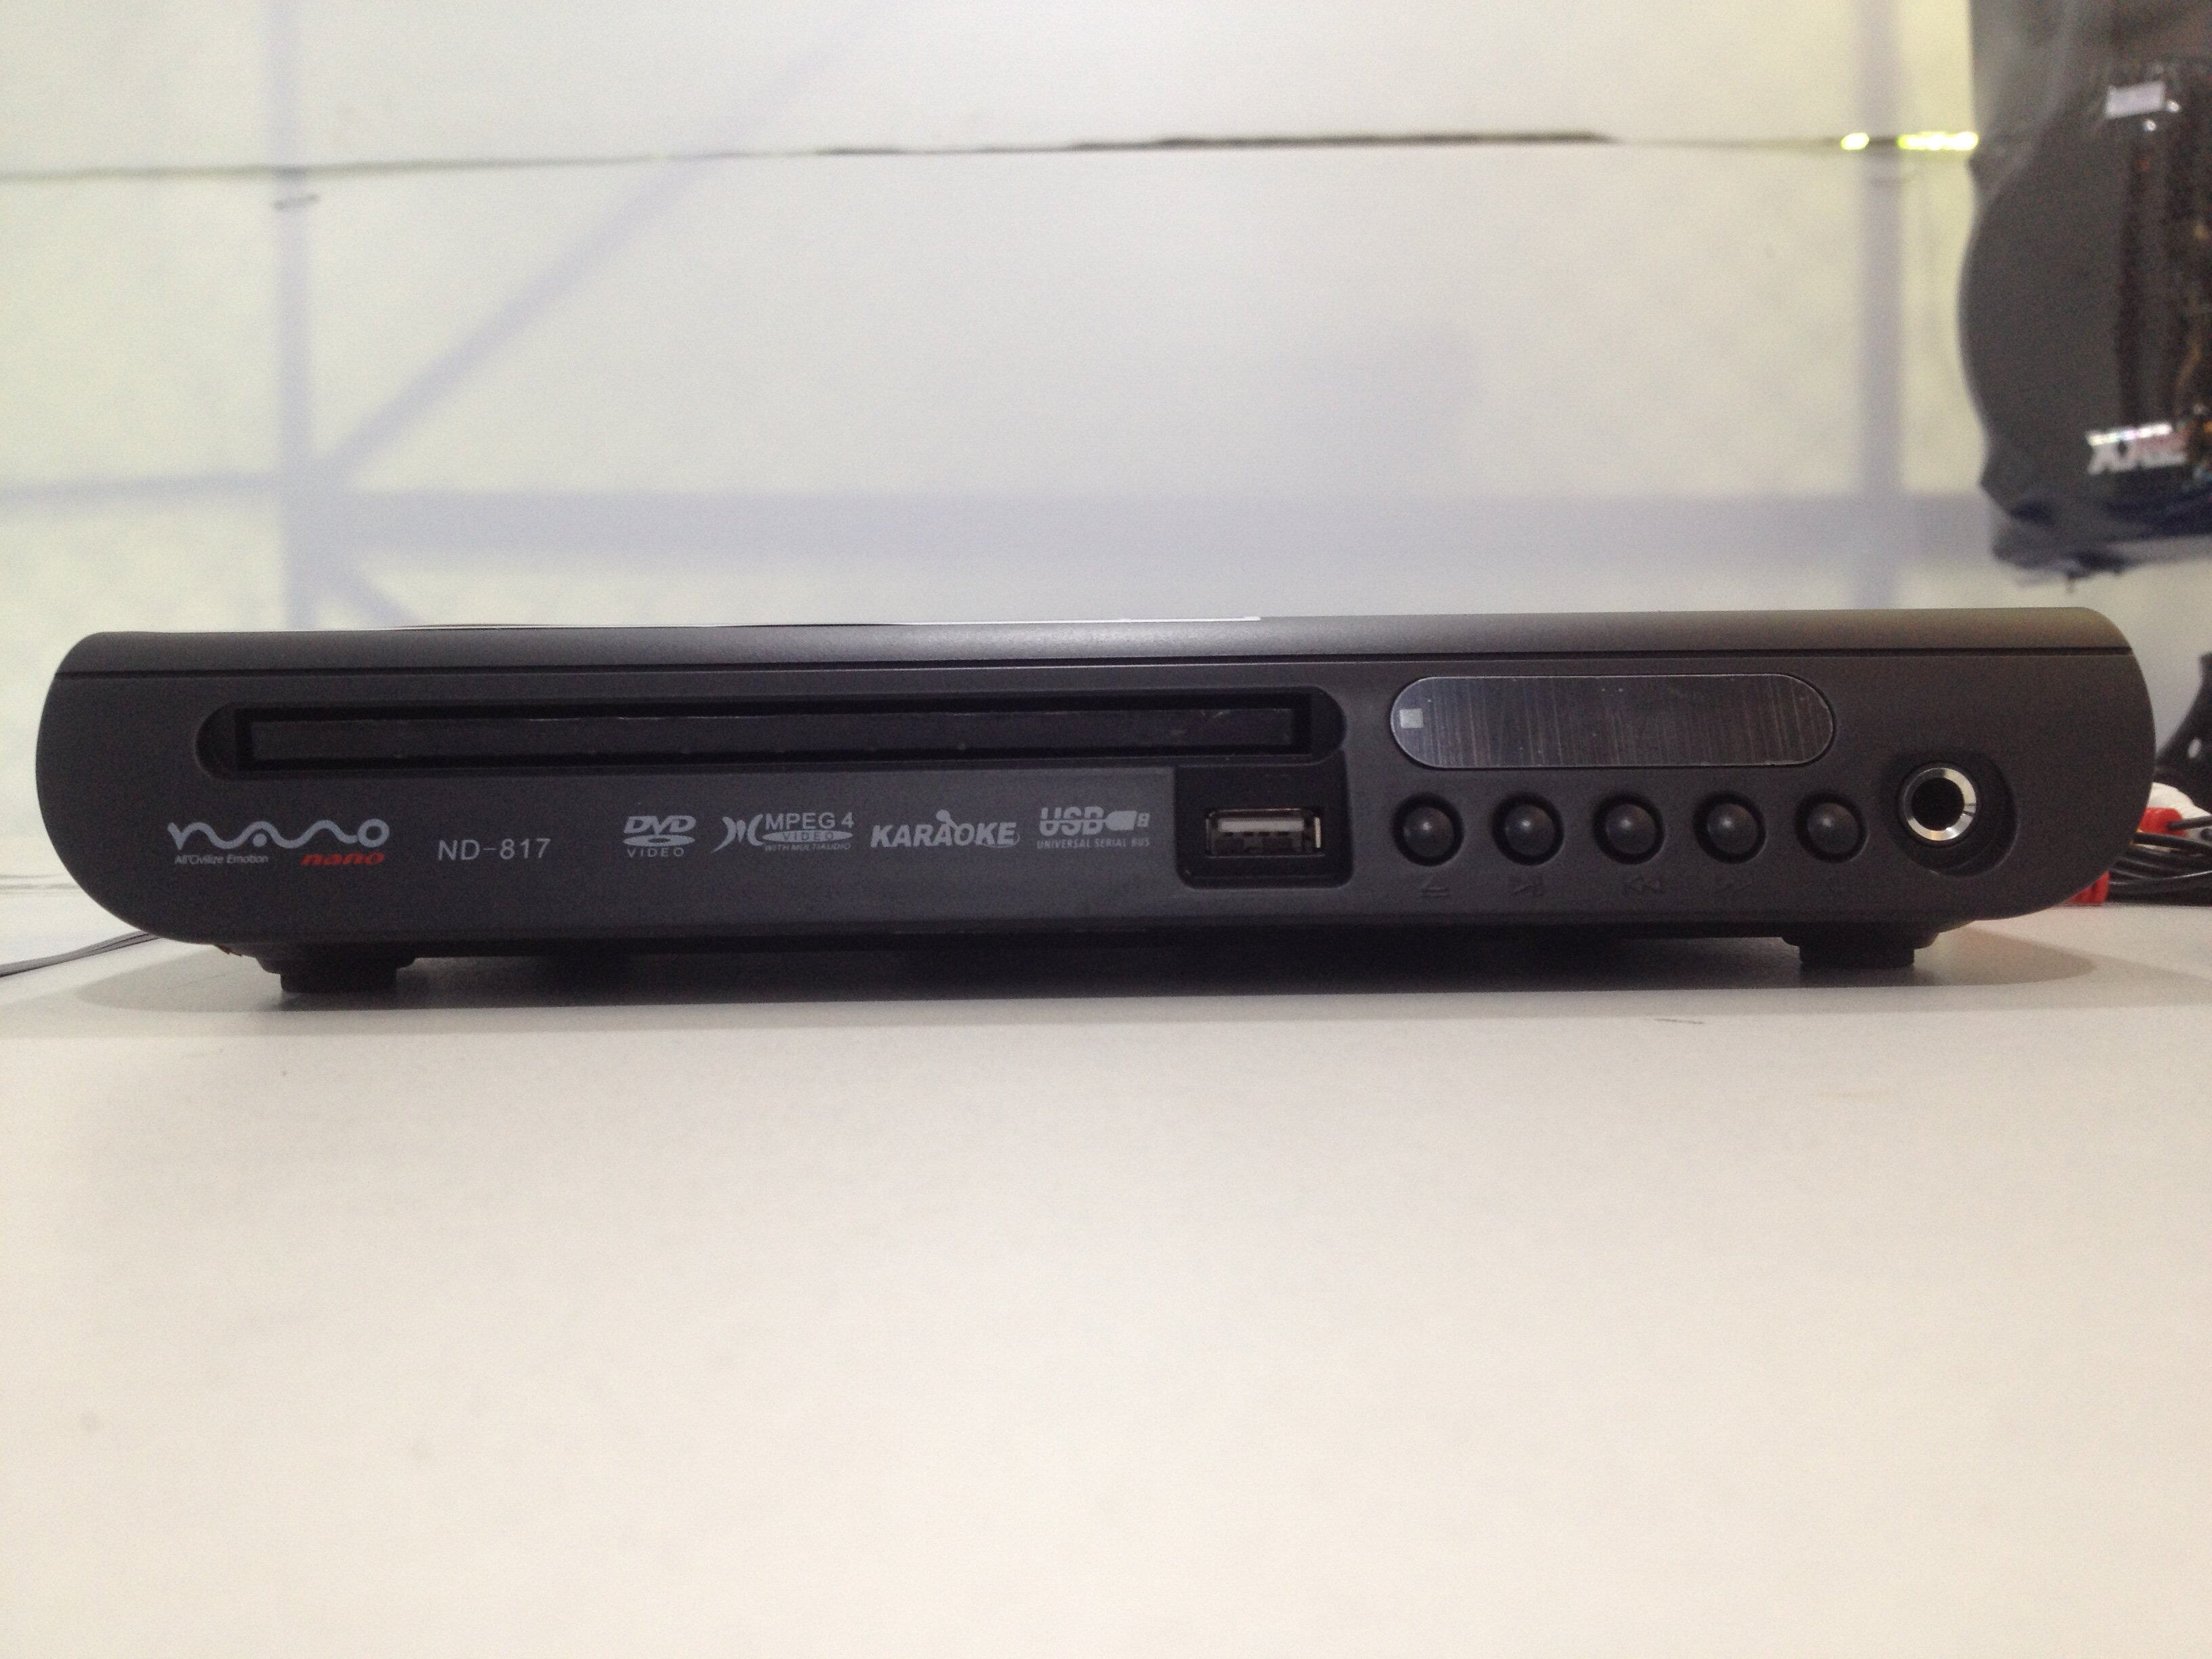 DVD Player เครื่องเล่นแผ่น DVD CD MP3 USB เล่นได้ทุกชนิดแผ่น  NANO ND-817 HDCD Jpeg